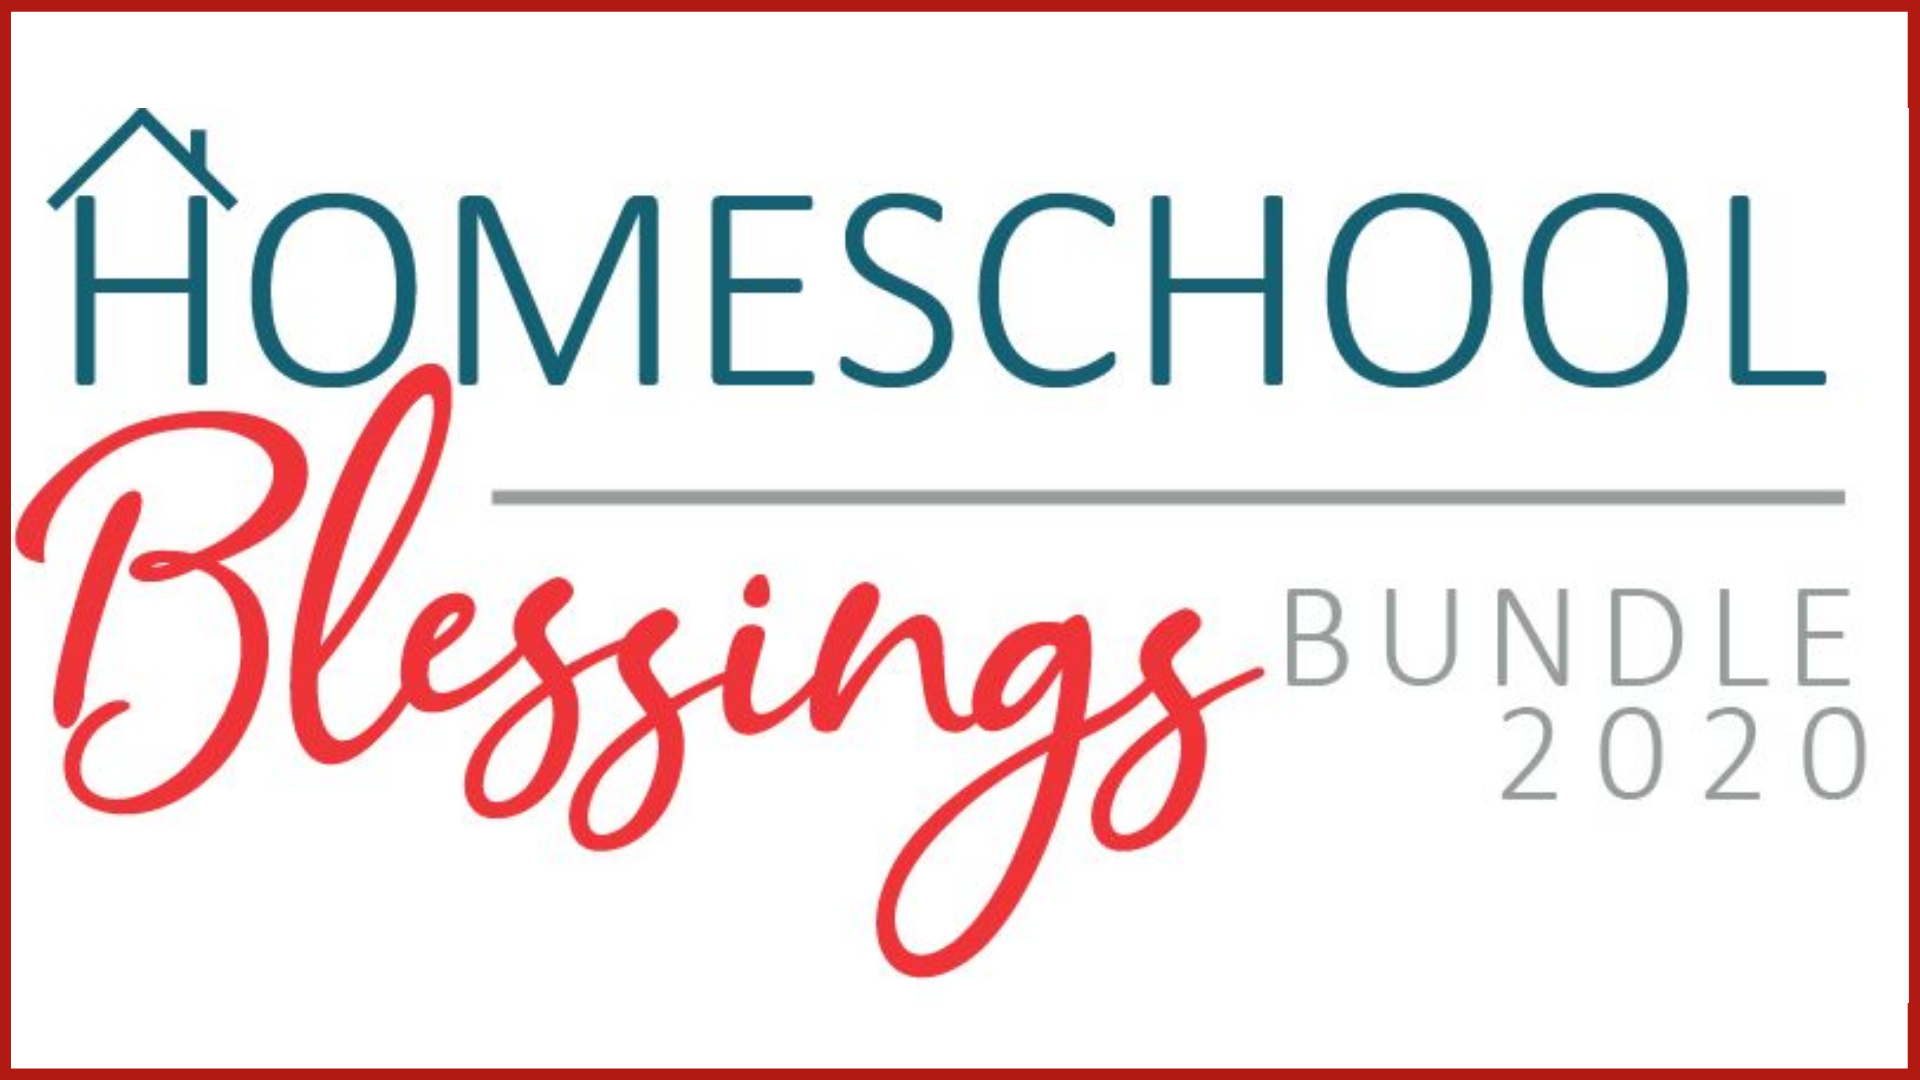 ﻿﻿Homeschool Blessings Bundle 2020